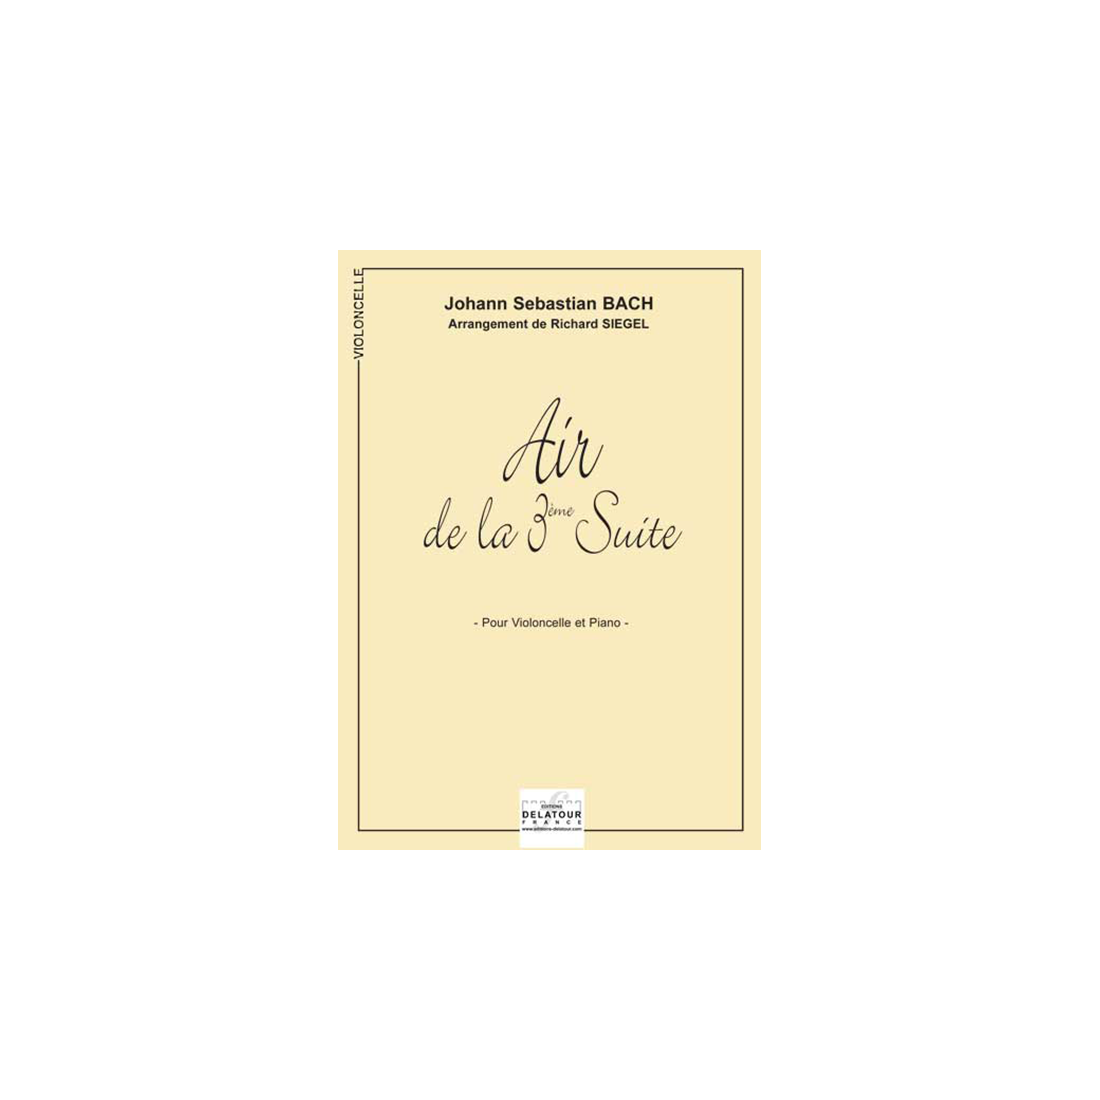 Aria aus der dritten Orchestersuite BWV 1068 für Violoncello und Klavier